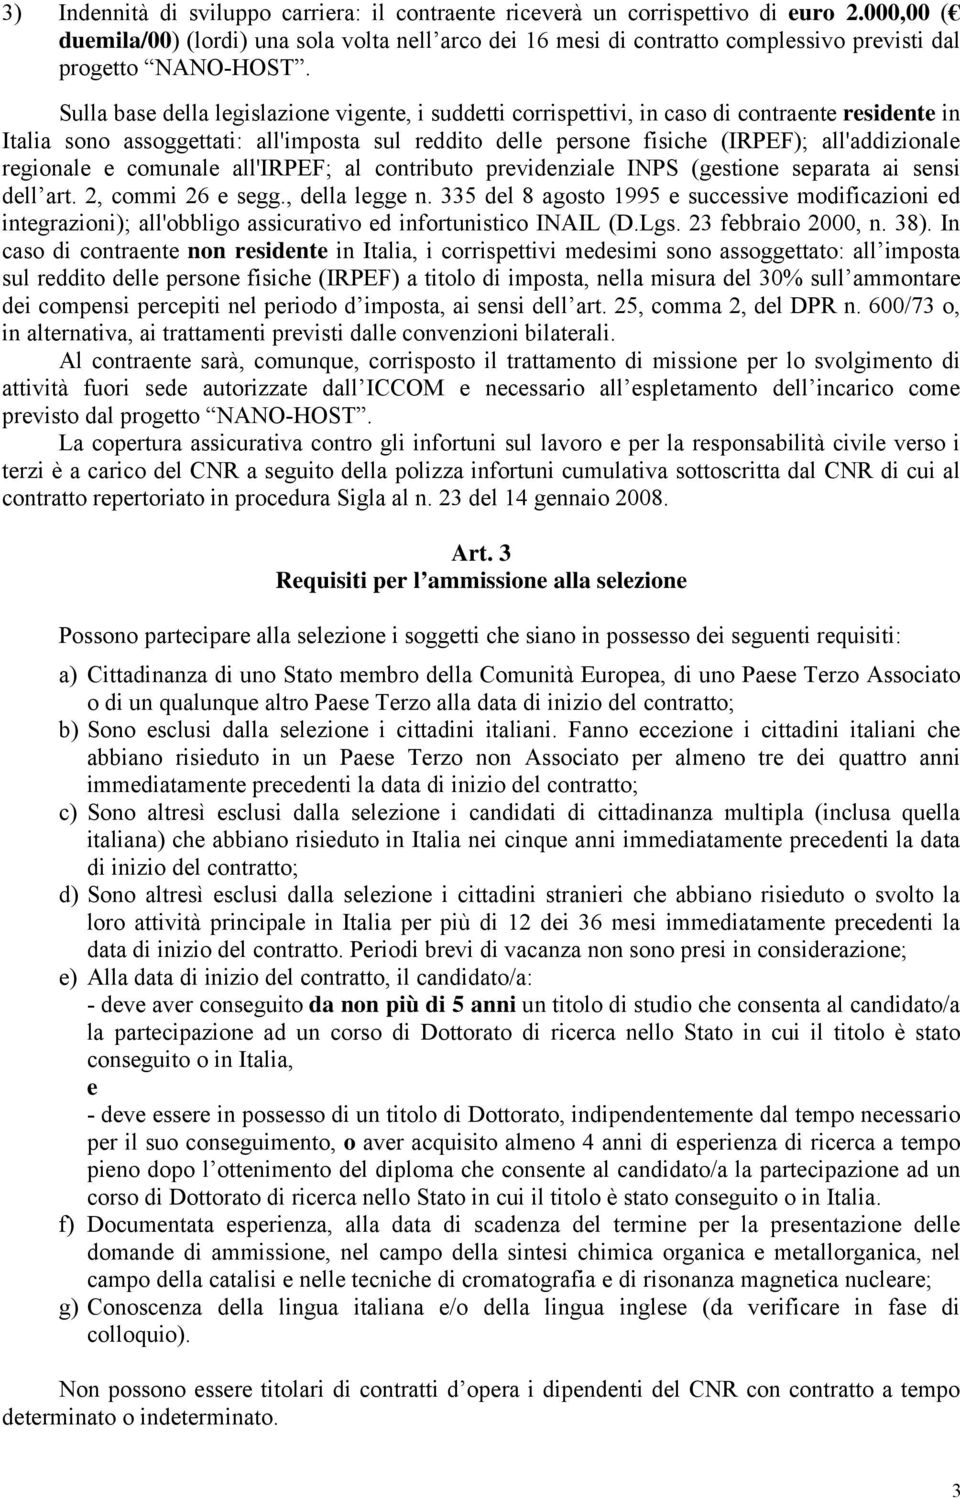 Sulla base della legislazione vigente, i suddetti corrispettivi, in caso di contraente residente in Italia sono assoggettati: all'imposta sul reddito delle persone fisiche (IRPEF); all'addizionale